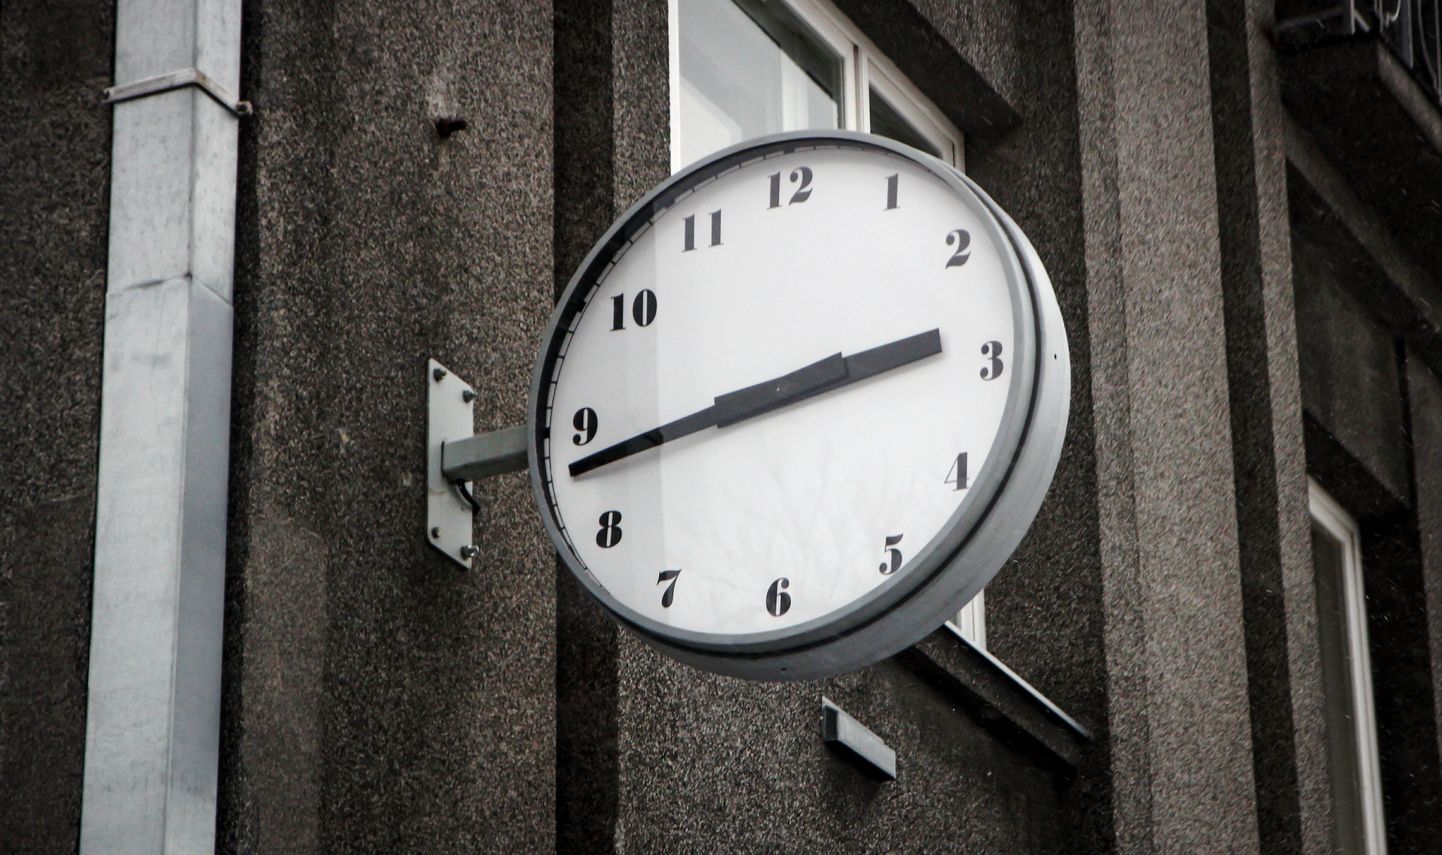 Pärnu linnavalitsuse hoone külge kruvitud uus kell sai seal tiksuda vaid kaks nädalat.